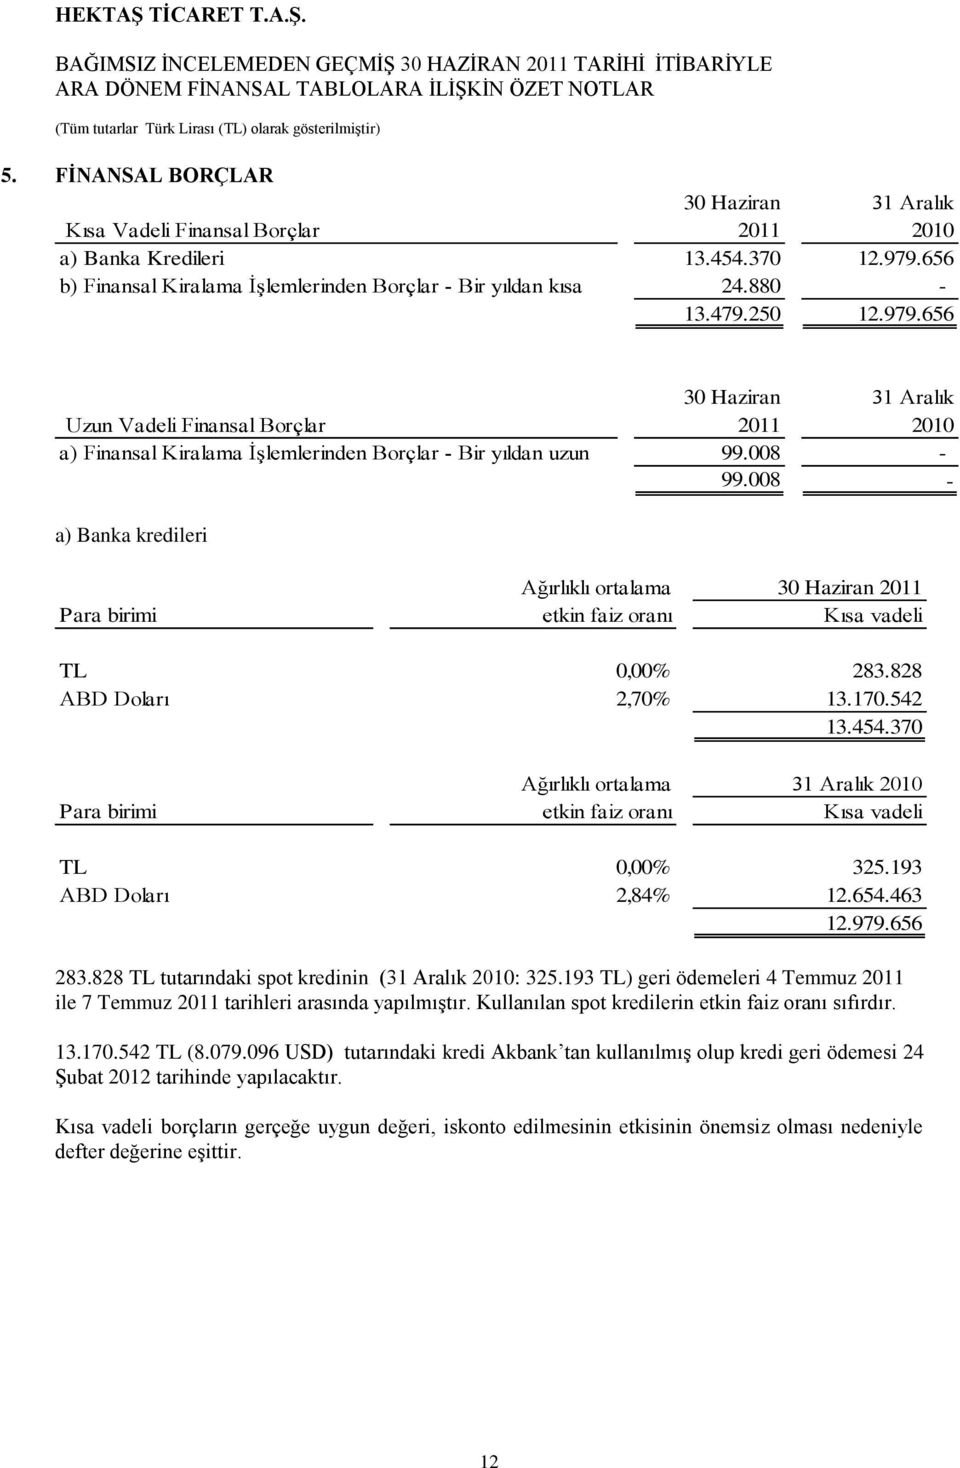 008 - a) Banka kredileri Ağırlıklı ortalama 30 Haziran 2011 Para birimi etkin faiz oranı Kısa vadeli TL 0,00% 283.828 ABD Doları 2,70% 13.170.542 13.454.